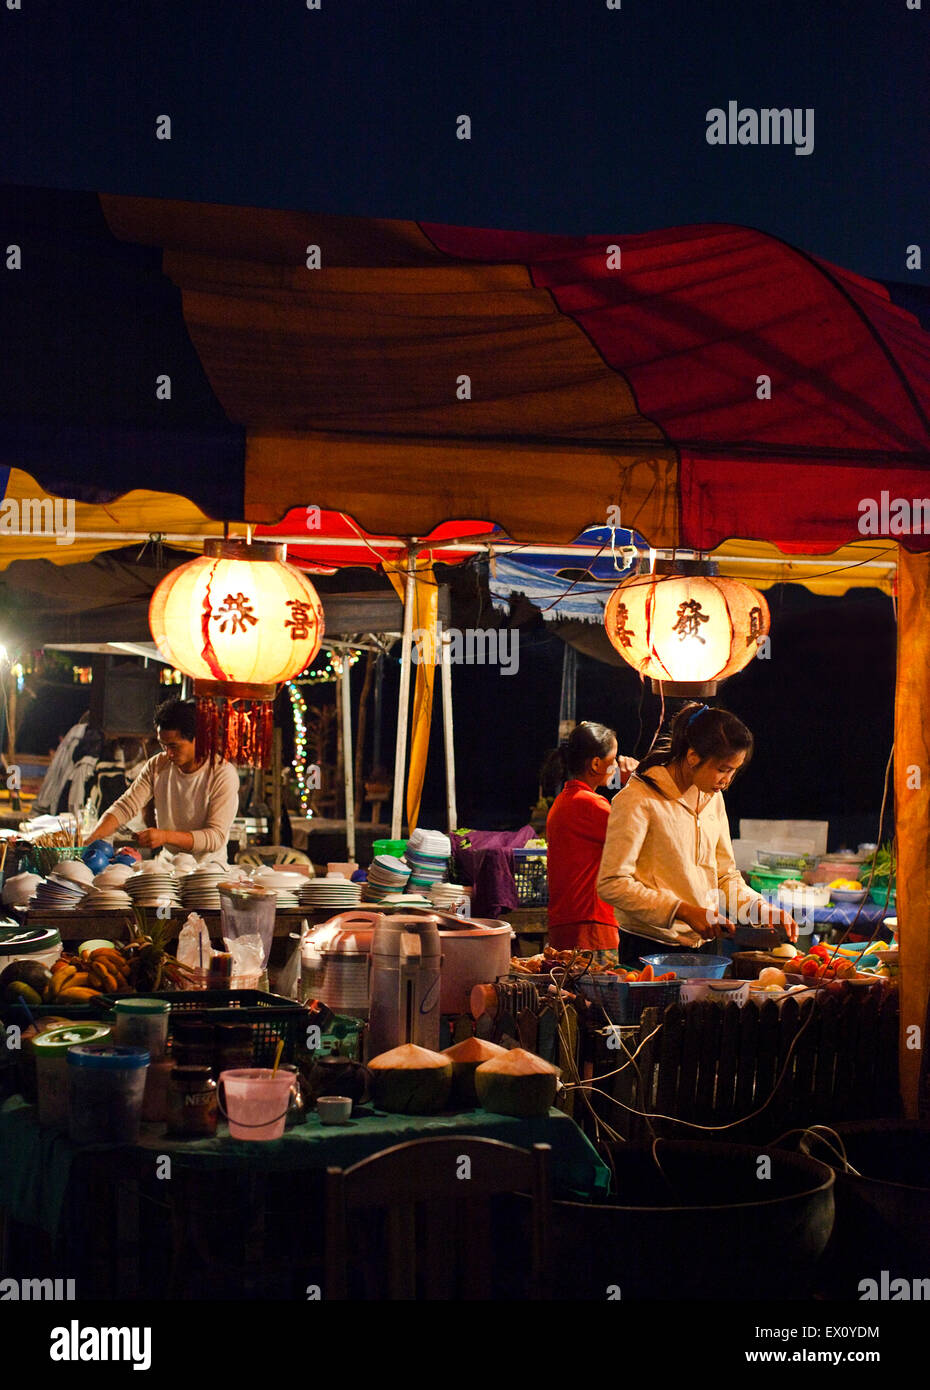 Puesto de comida los proveedores en el mercado de la noche por el río Mekong, Quai Fa Ngum, Vientiane, Laos P.D.R. Foto de stock